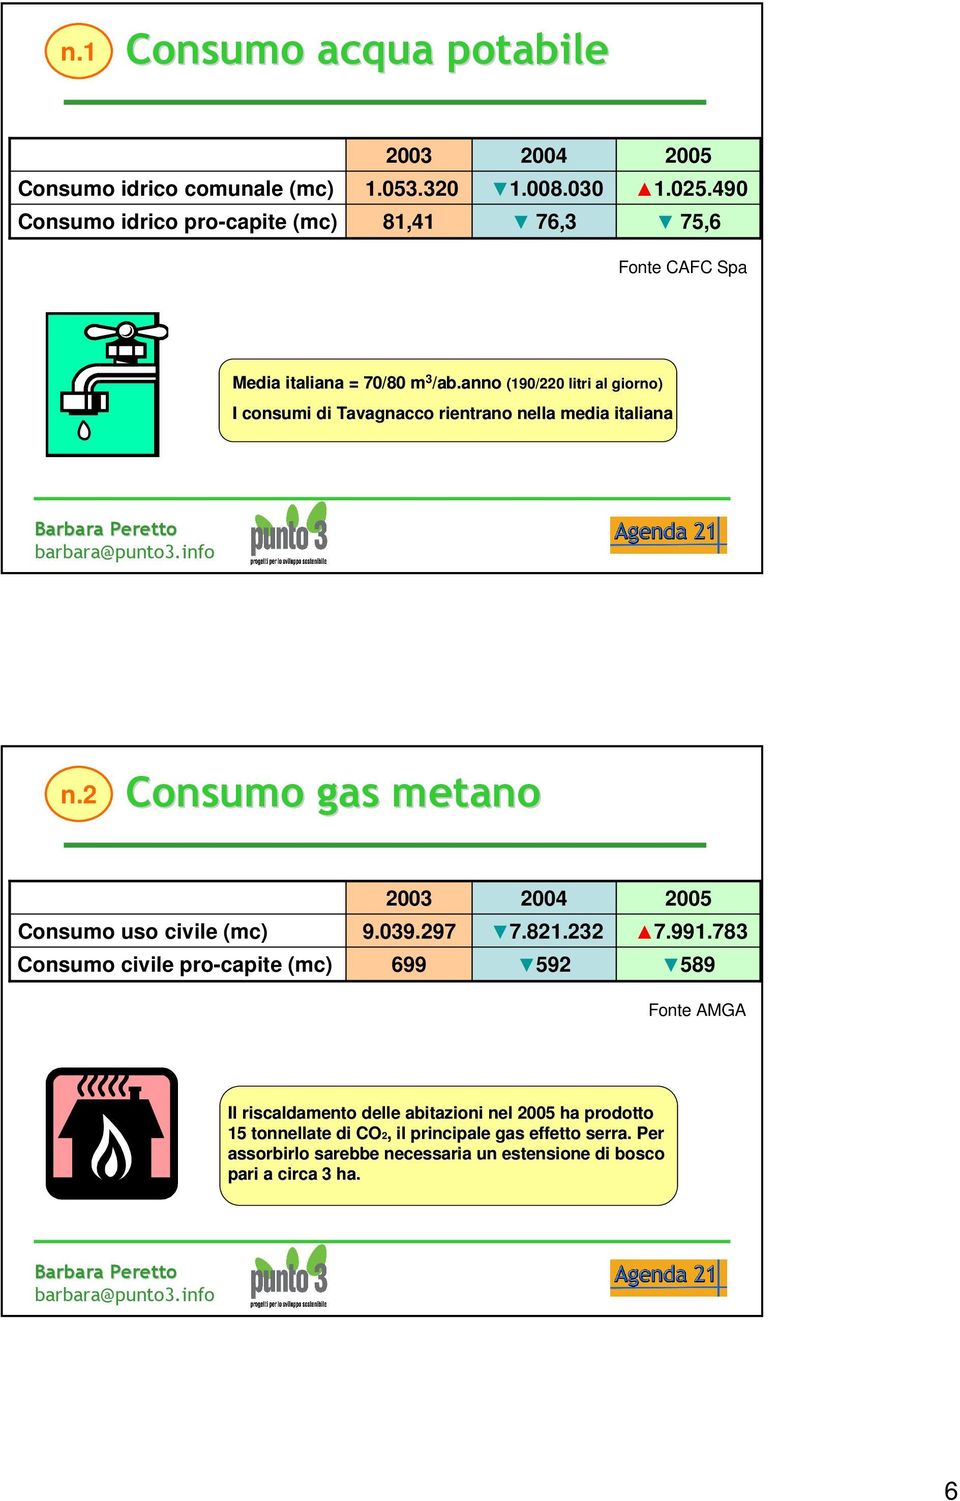 2 Consumo gas metano Consumo uso civile (mc) Consumo civile pro-capite (mc) 2003 9.039.297 699 2004 7.821.232 592 2005 7.991.